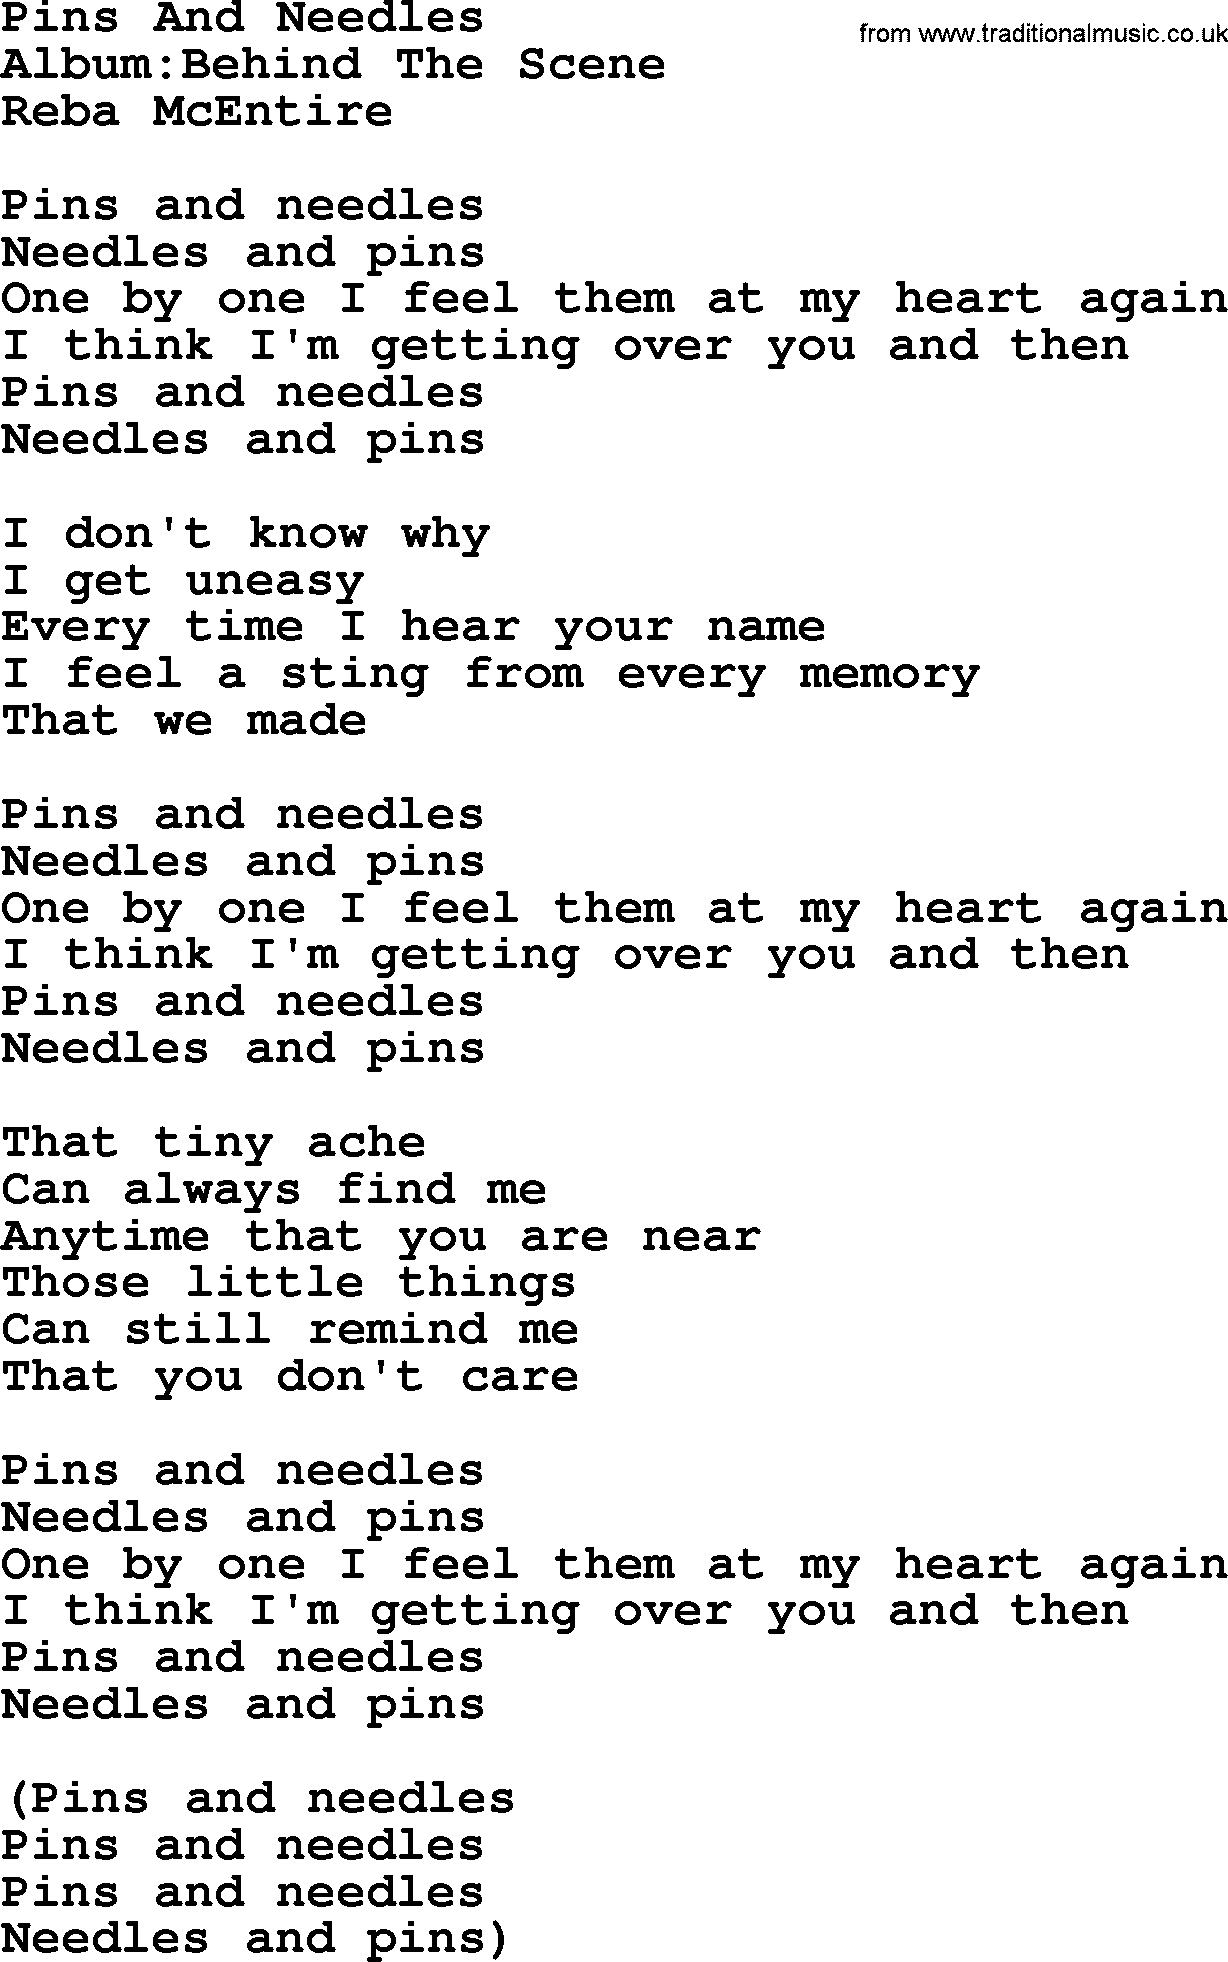 Reba McEntire song: Pins And Needles lyrics